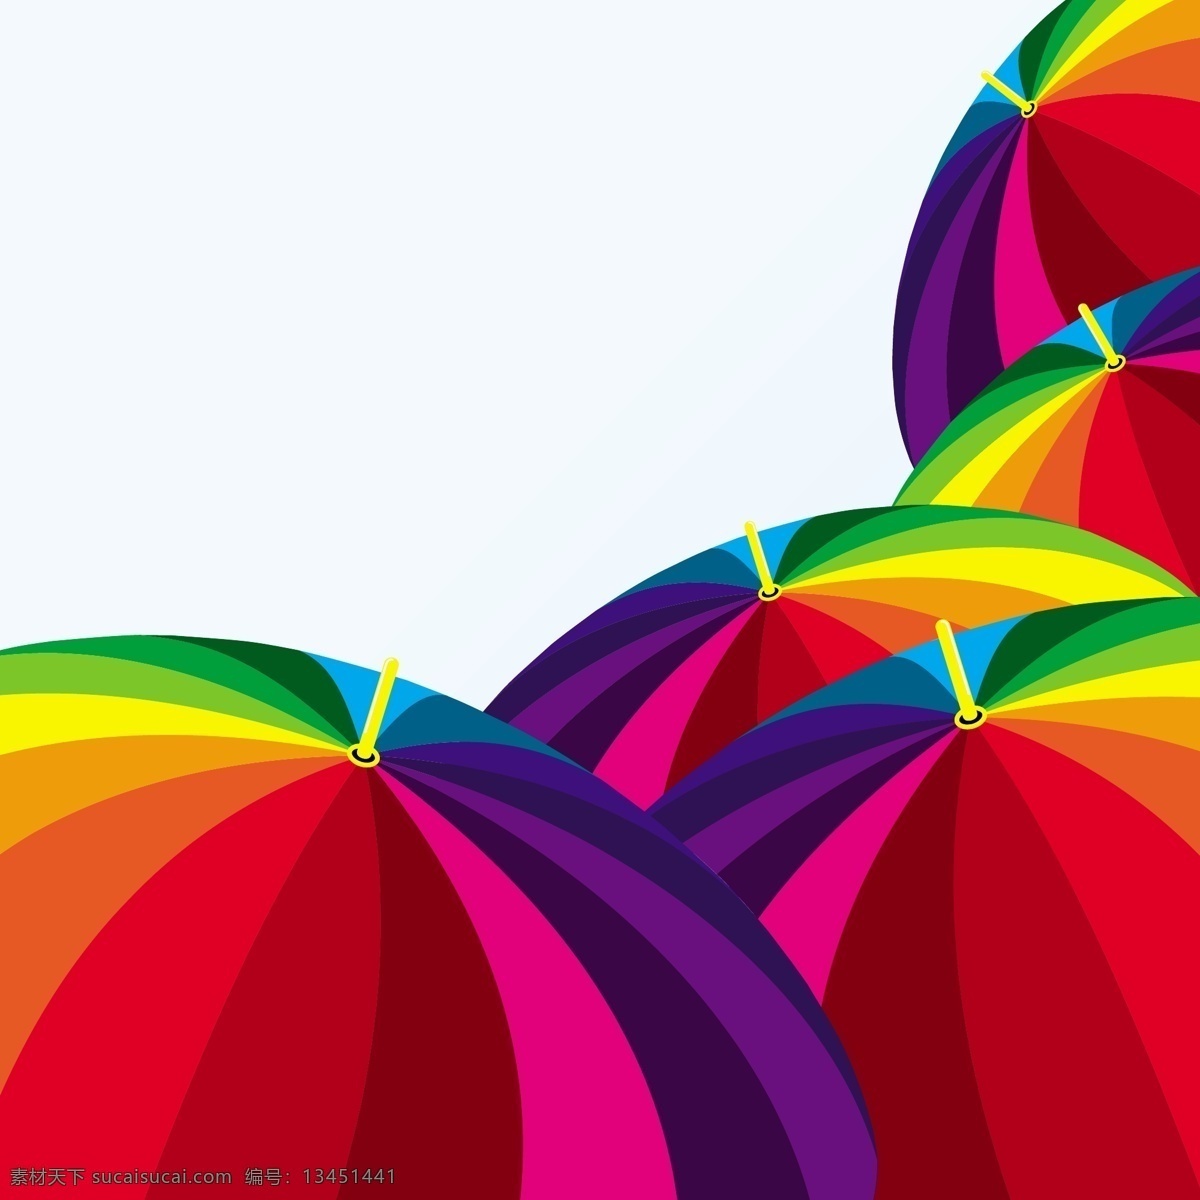 漂亮 彩色 雨伞 矢量 矢量下载 网页矢量 商业矢量 生活百科 白色